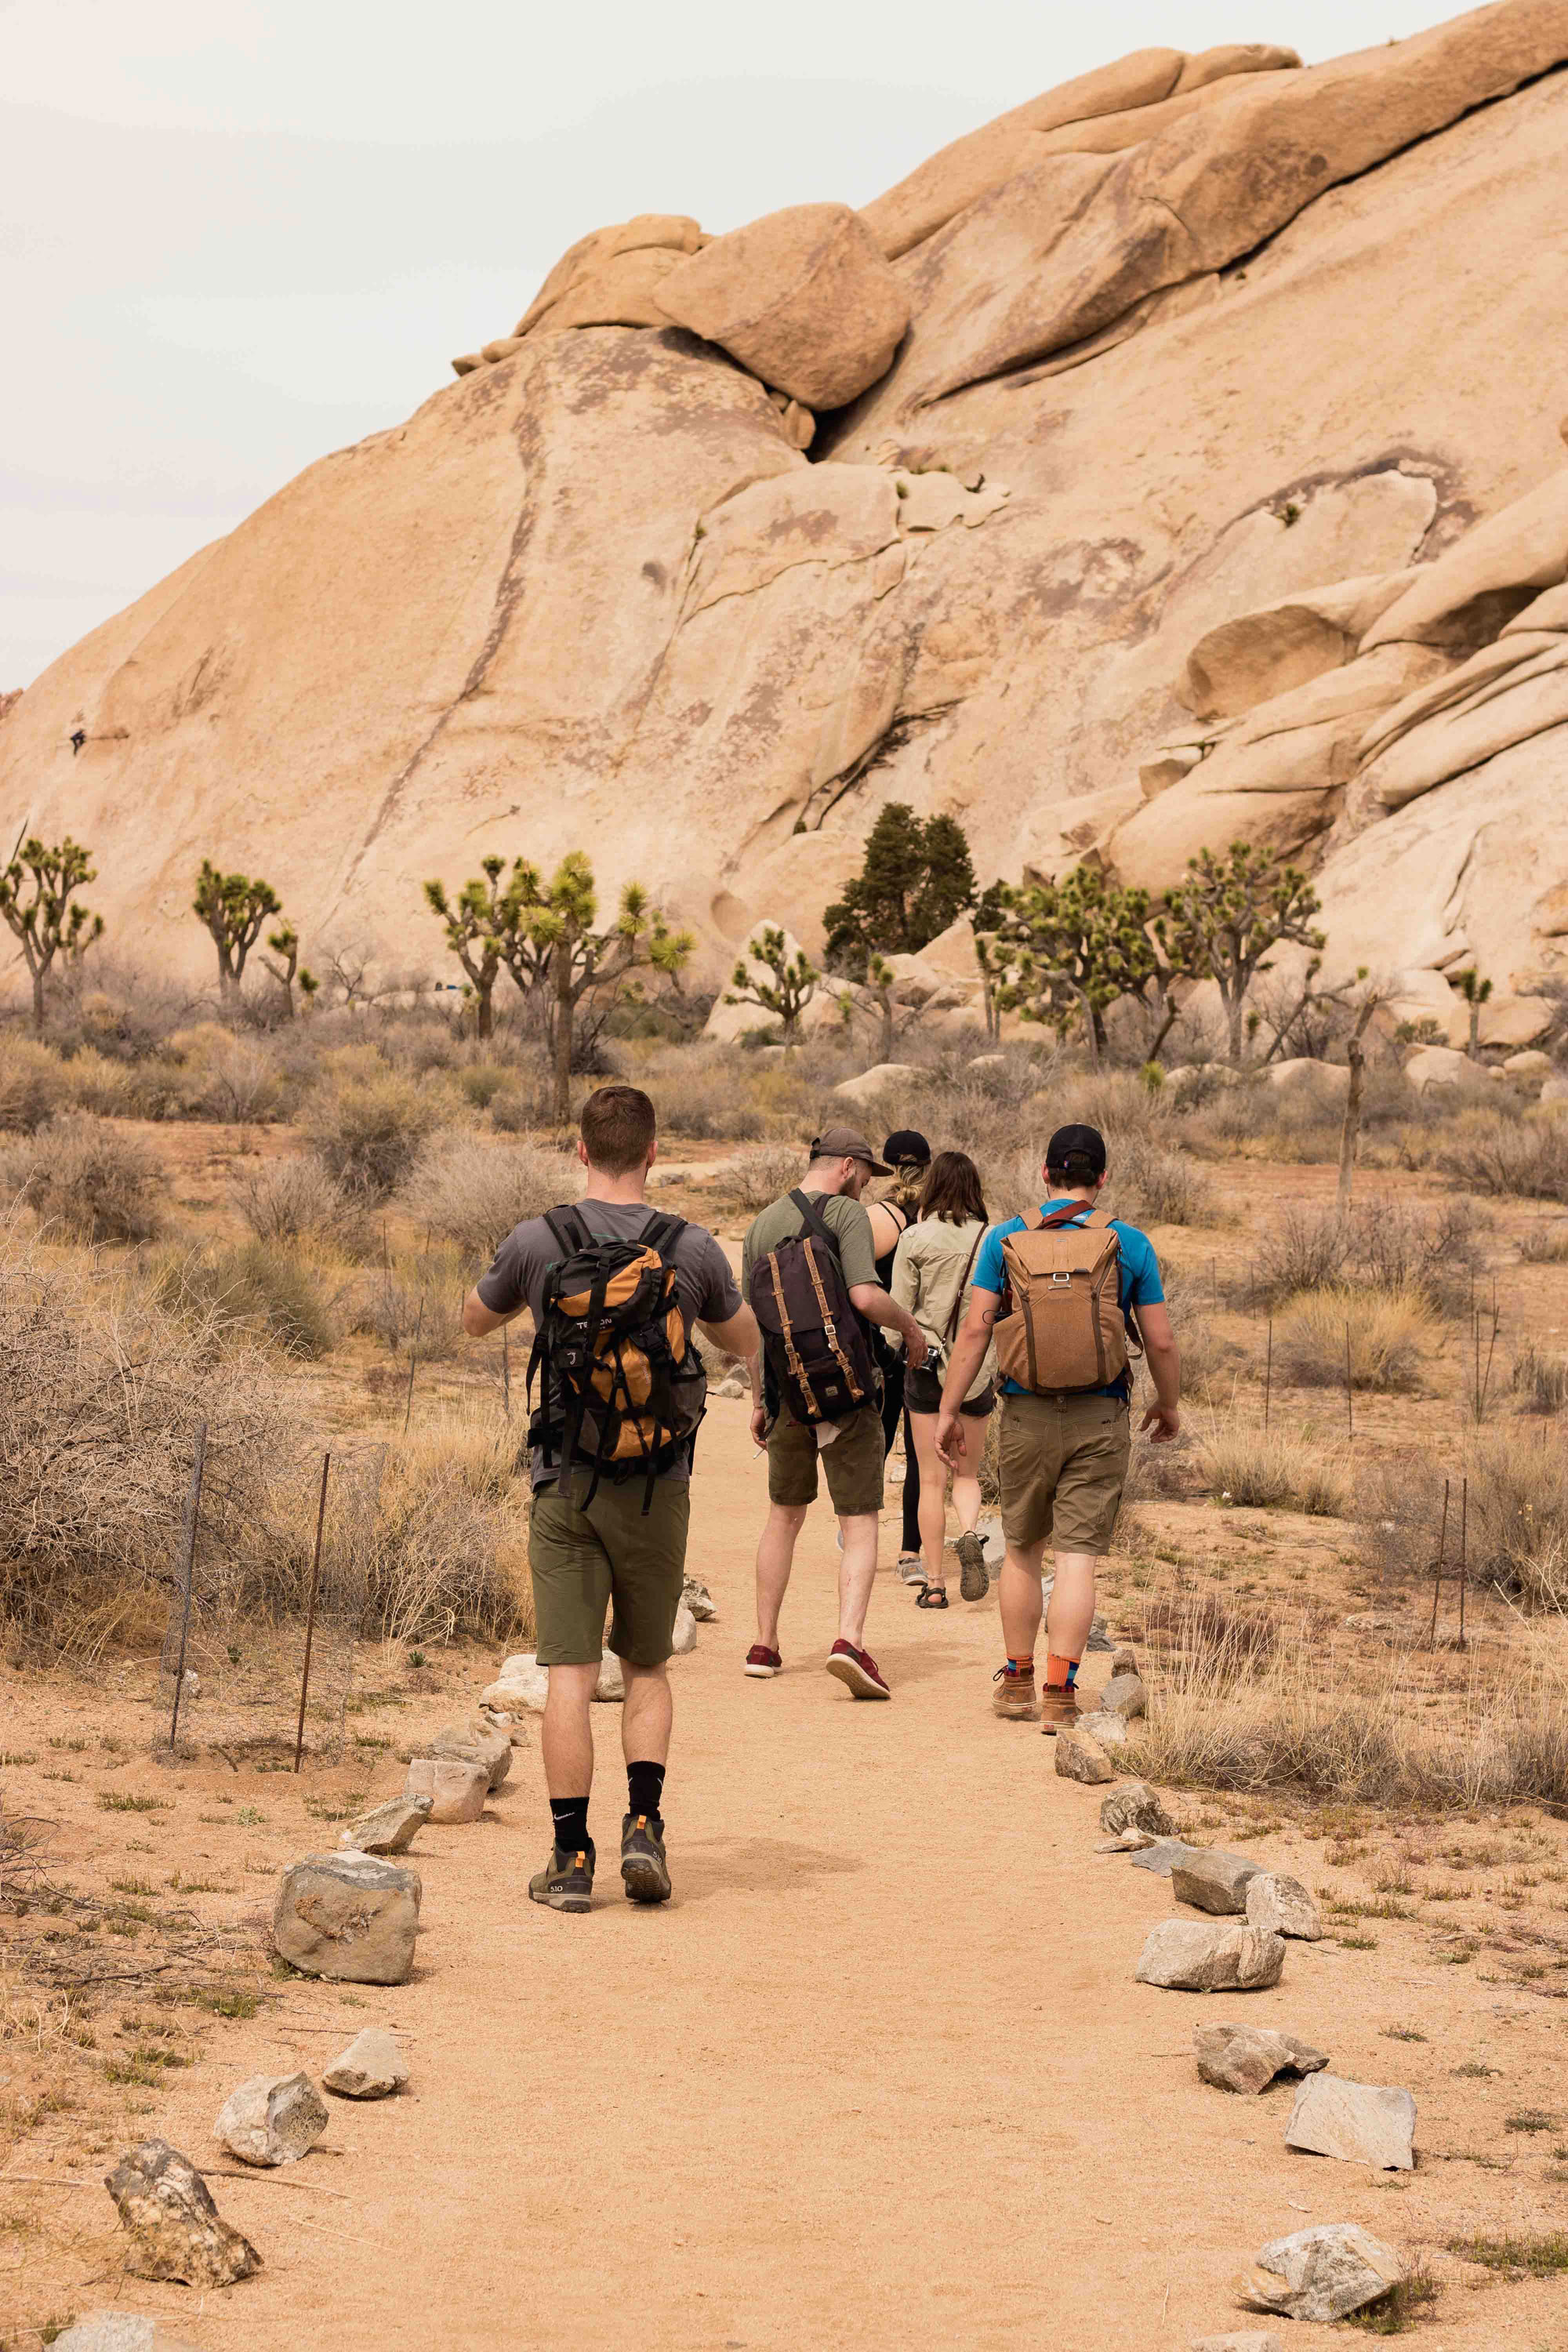 Group hiking in desert